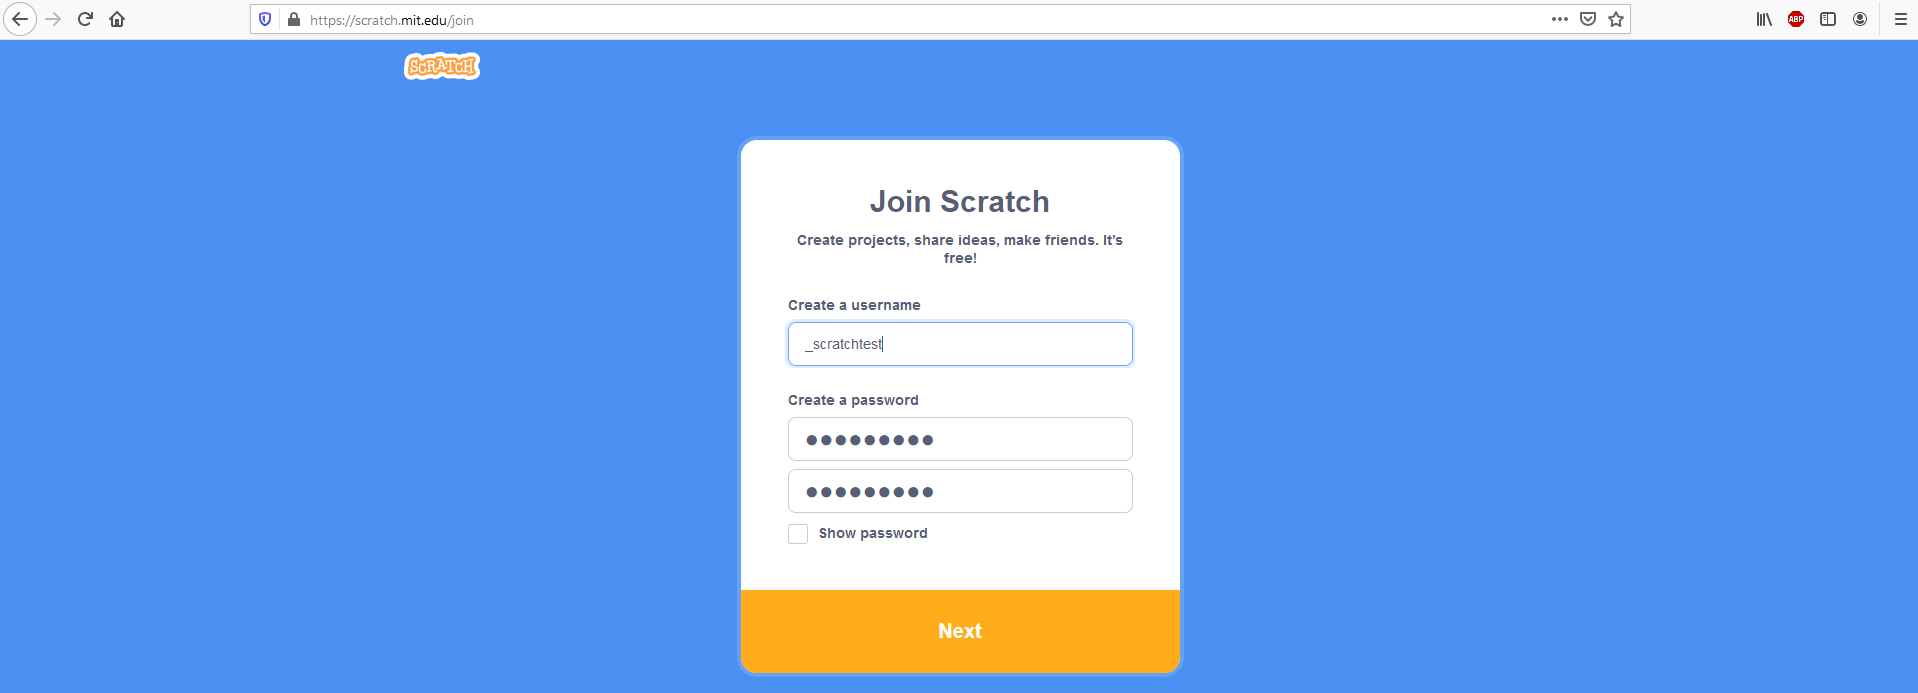 « Rejoindre Scratch »: fenêtre de dialogue pour créer un compte Scratch